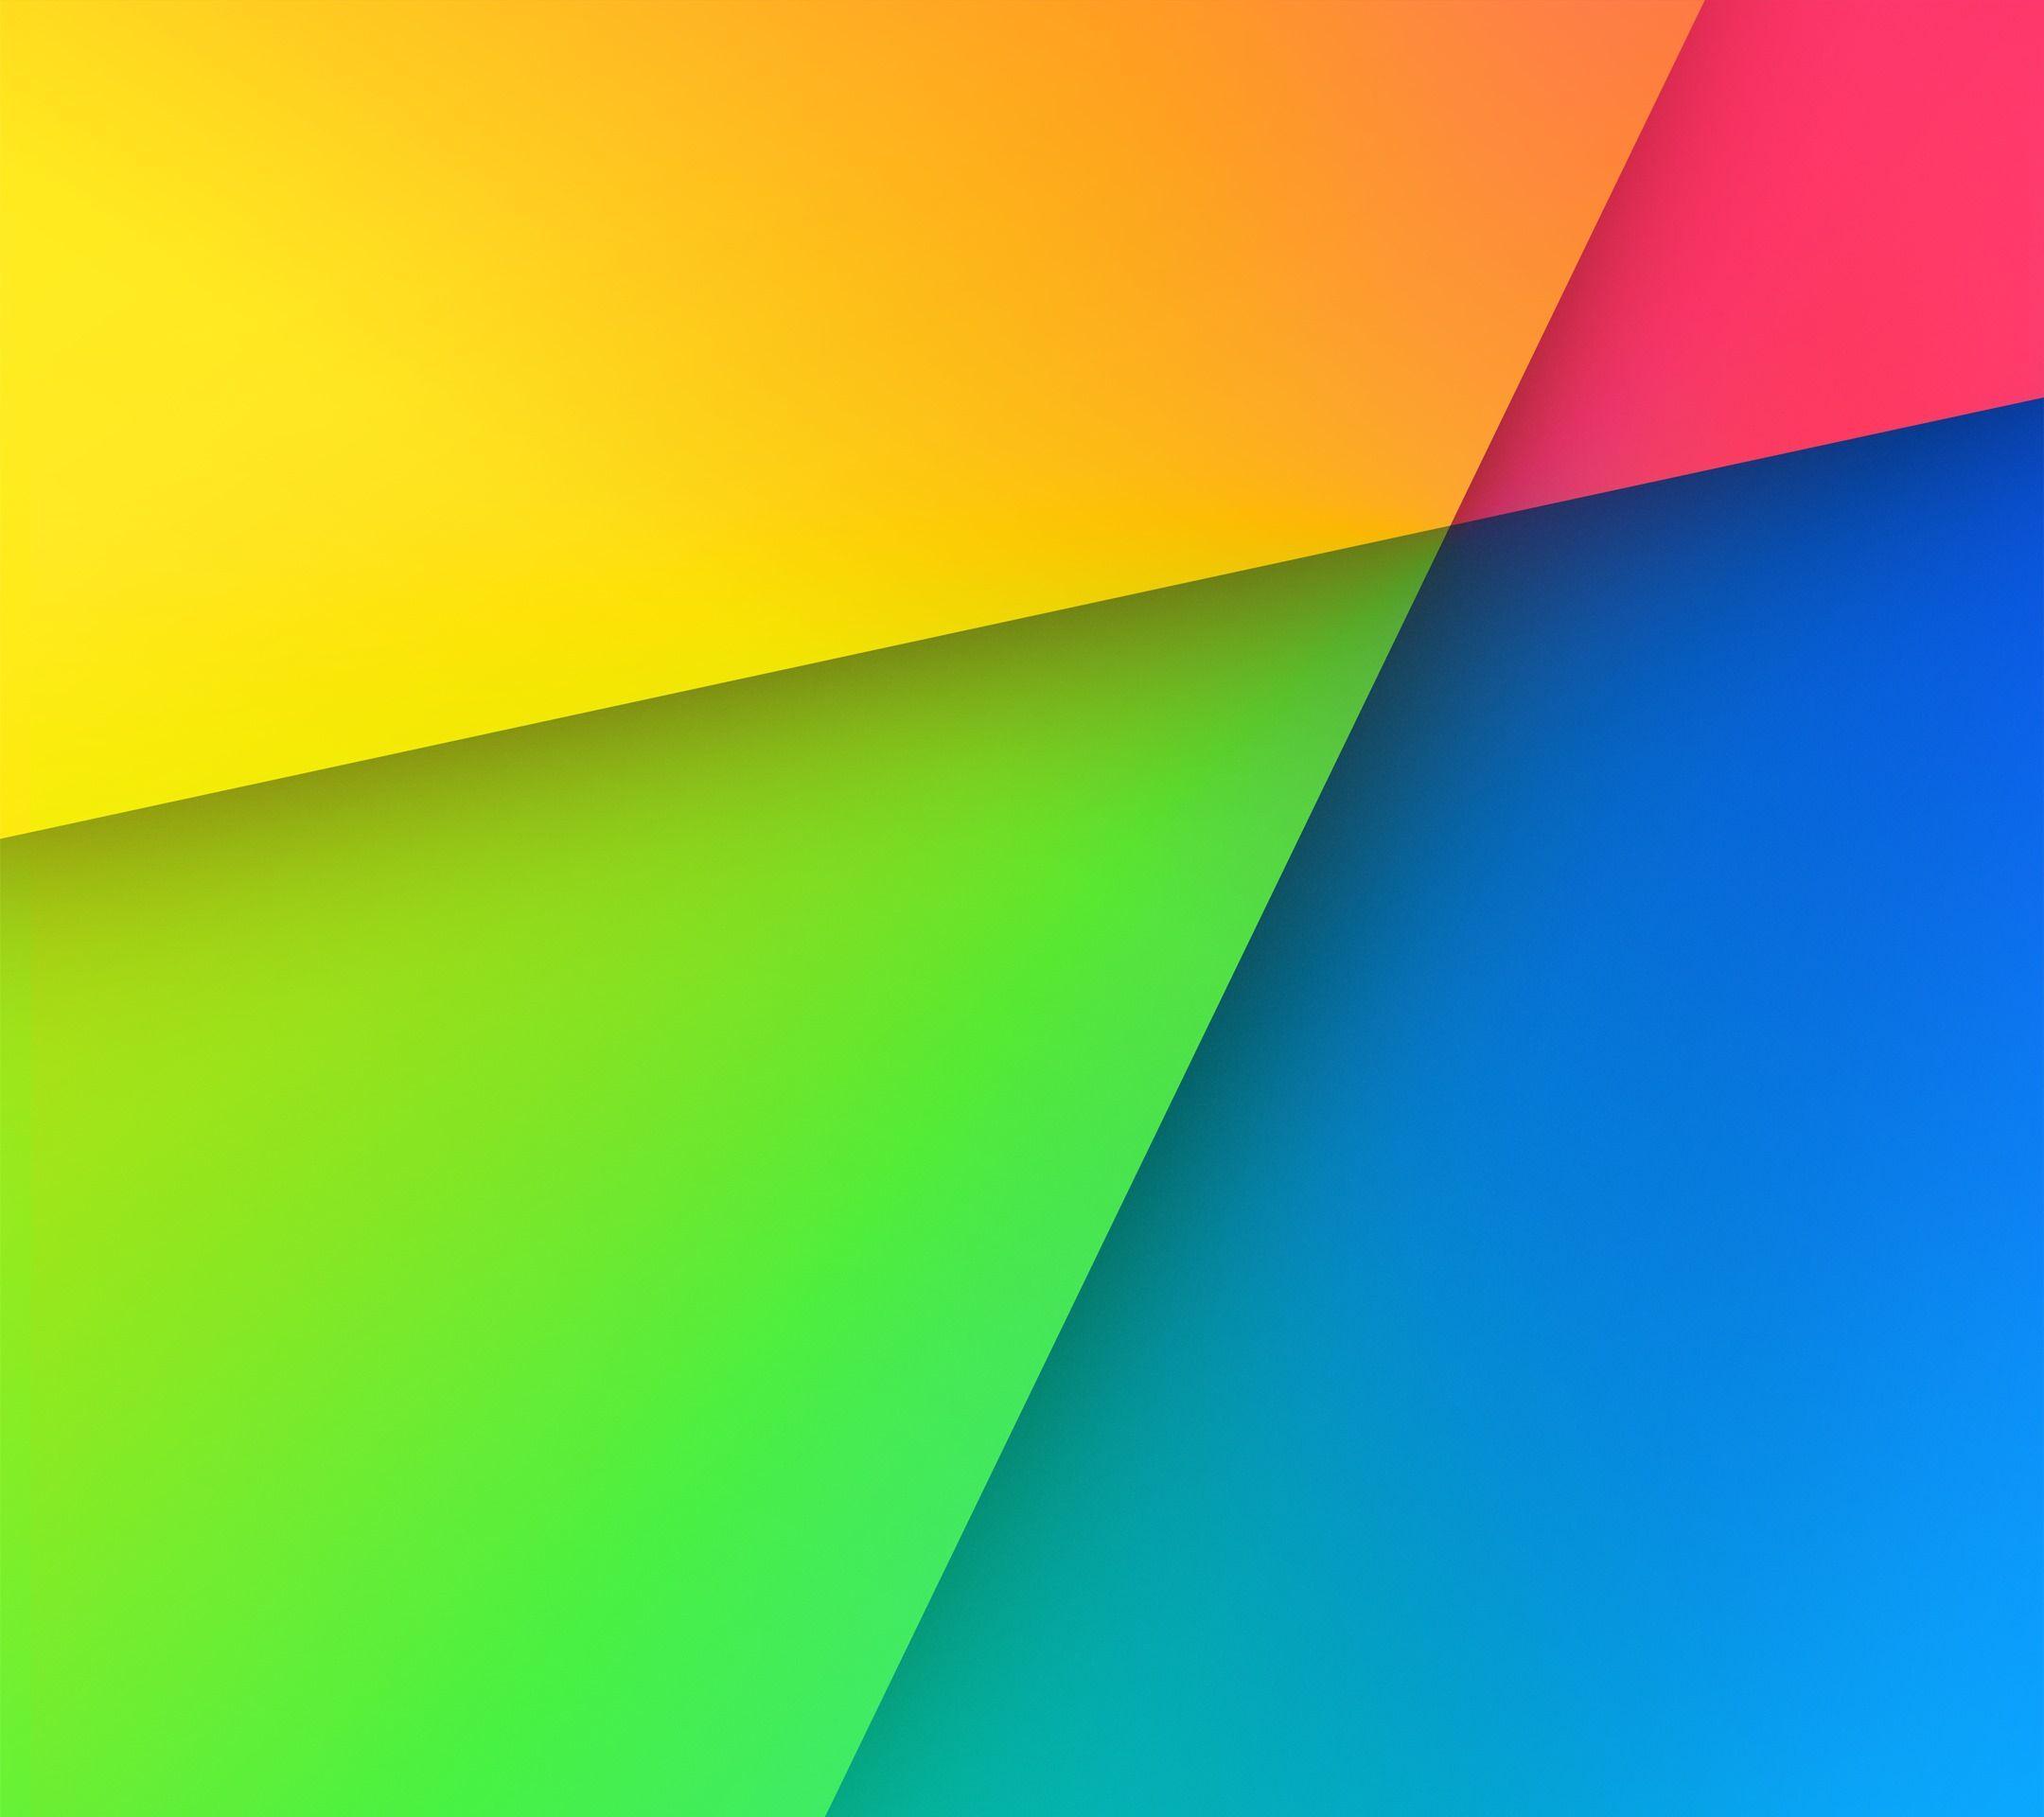 Download & Set Official Default Wallpaper of Nexus 7 (2013)